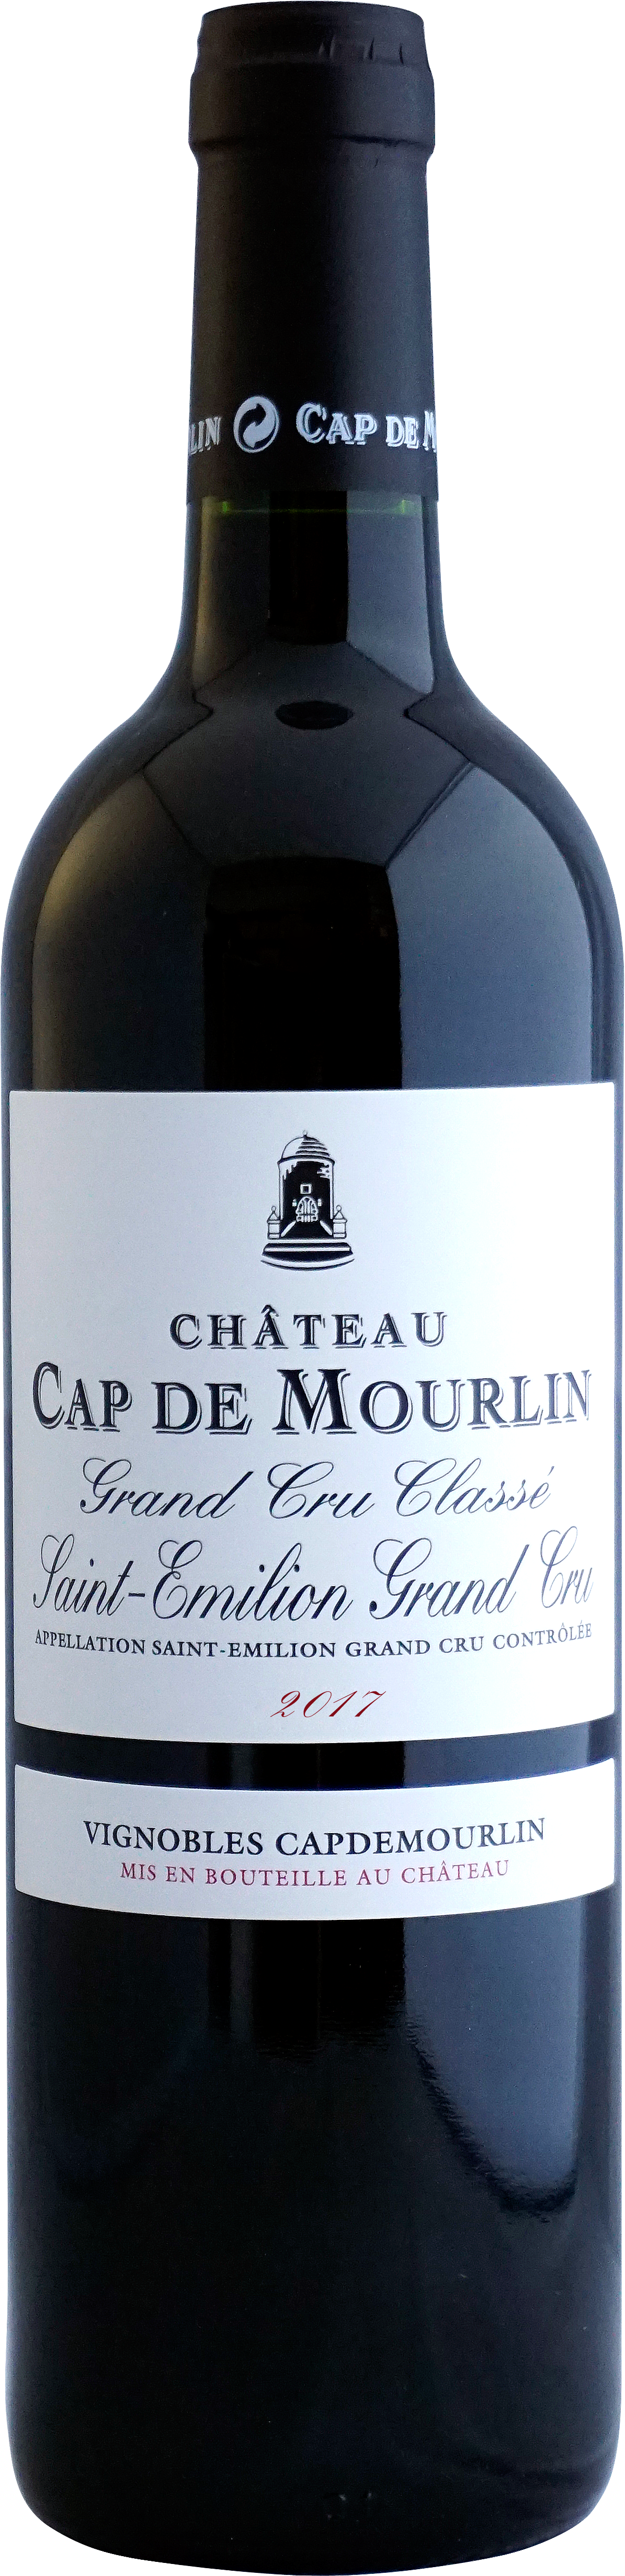 label wine bottle Cap deMourlin